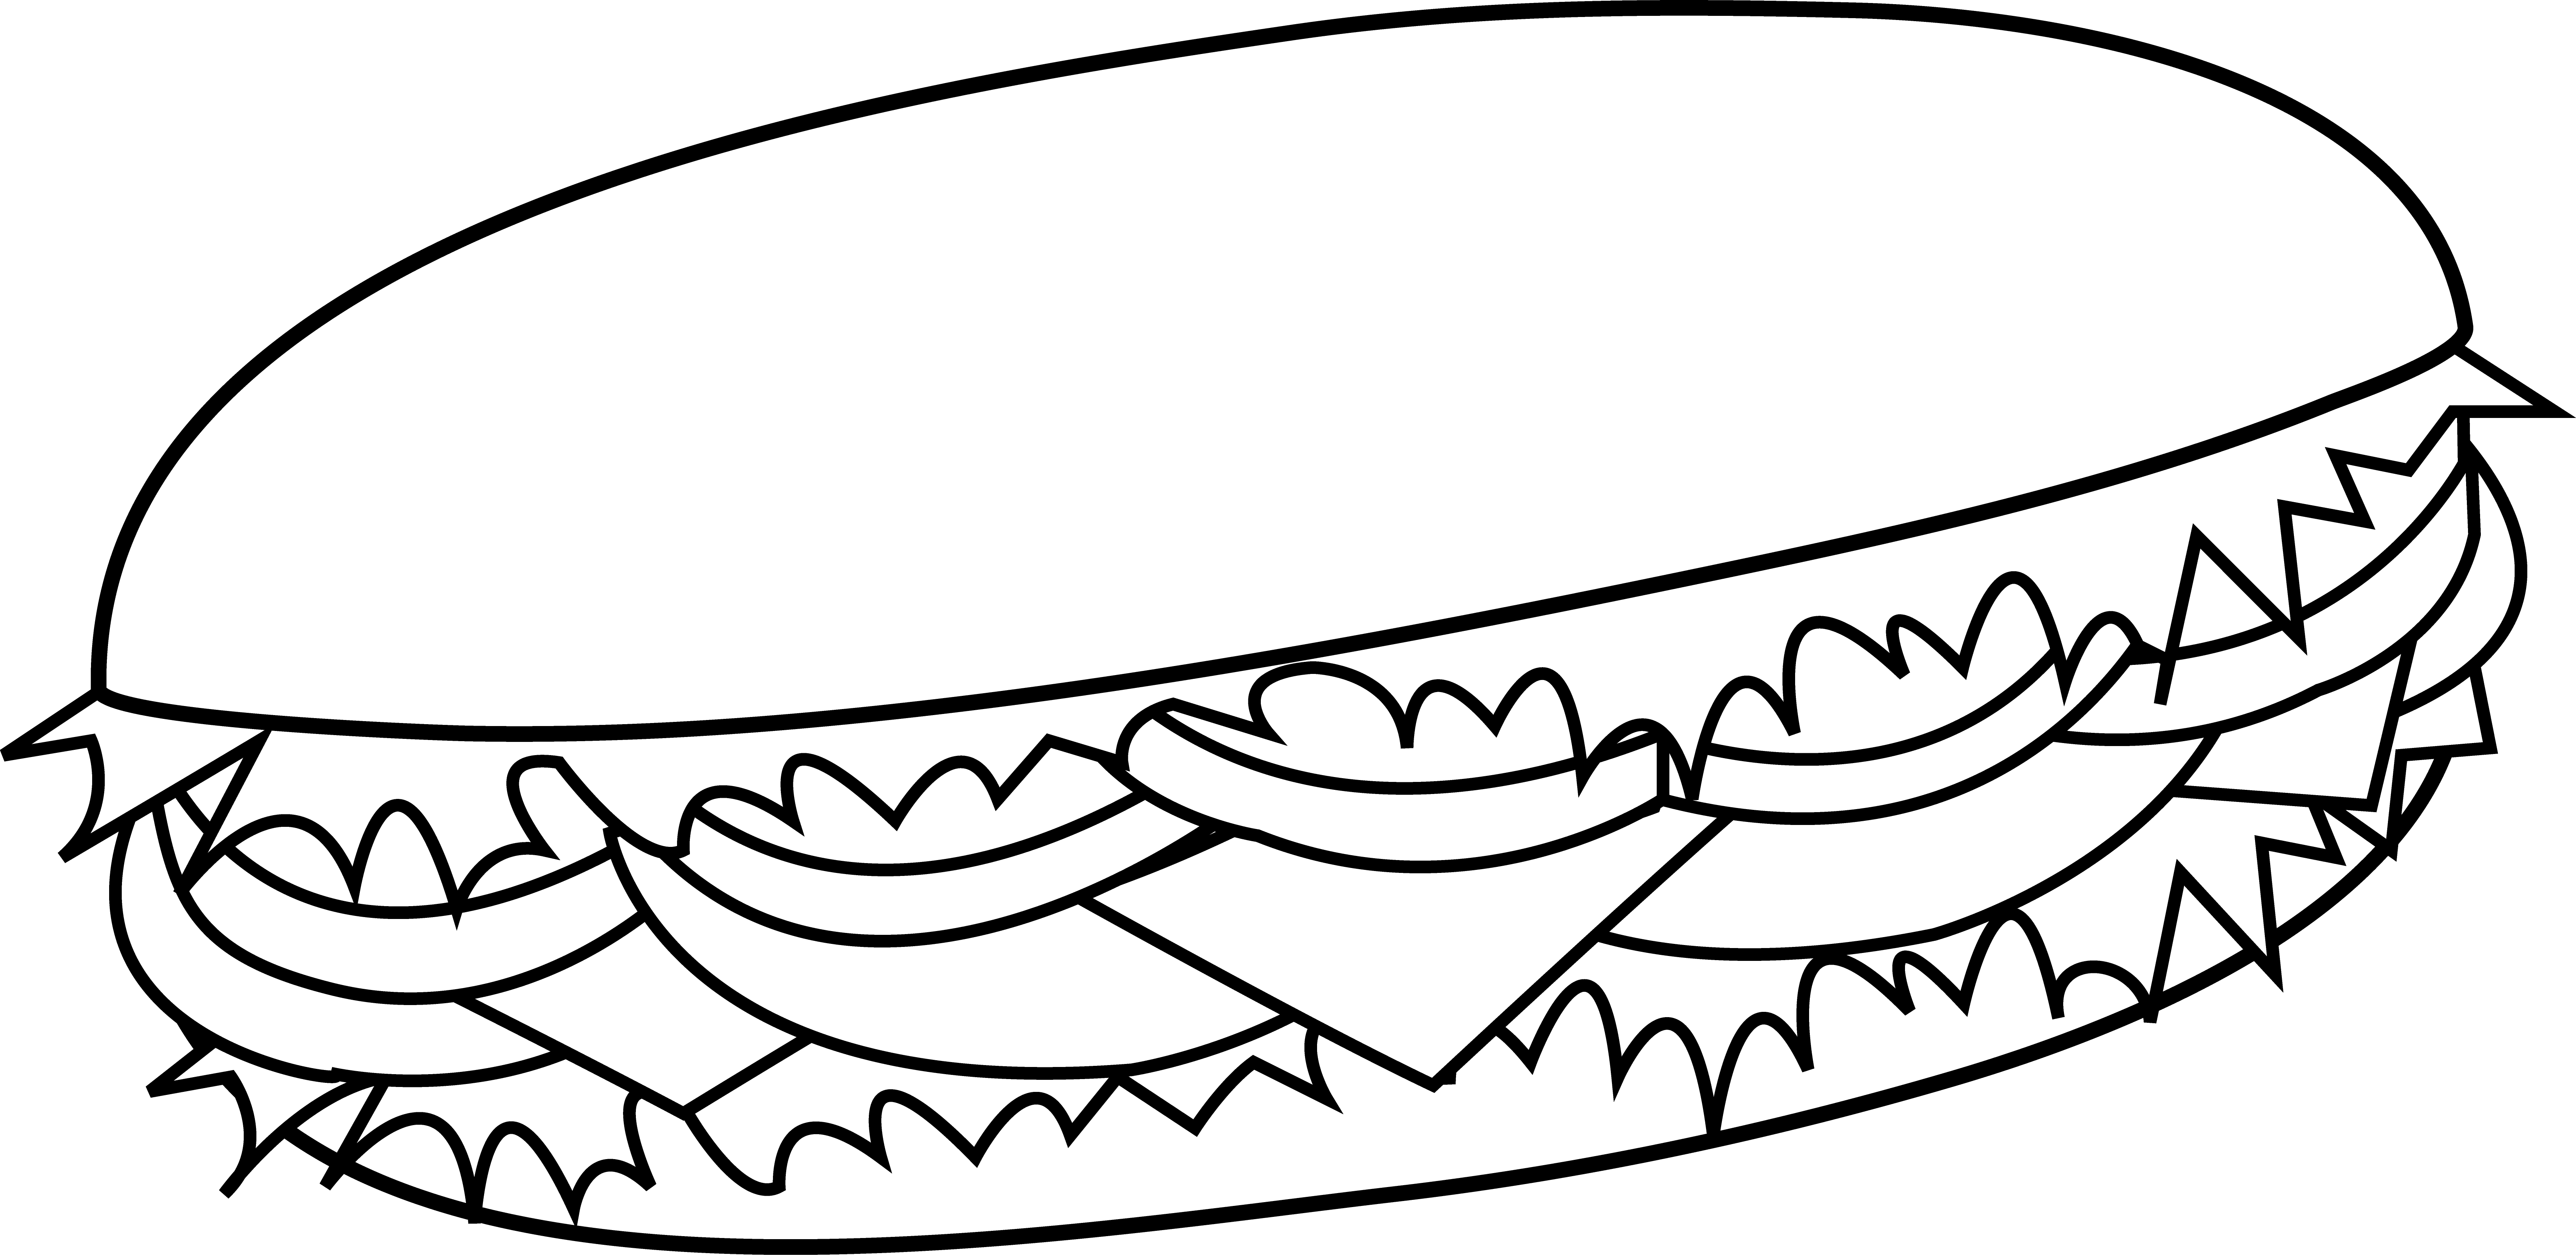 Sub Sandwich Colorable Line Art - Free Clip Art